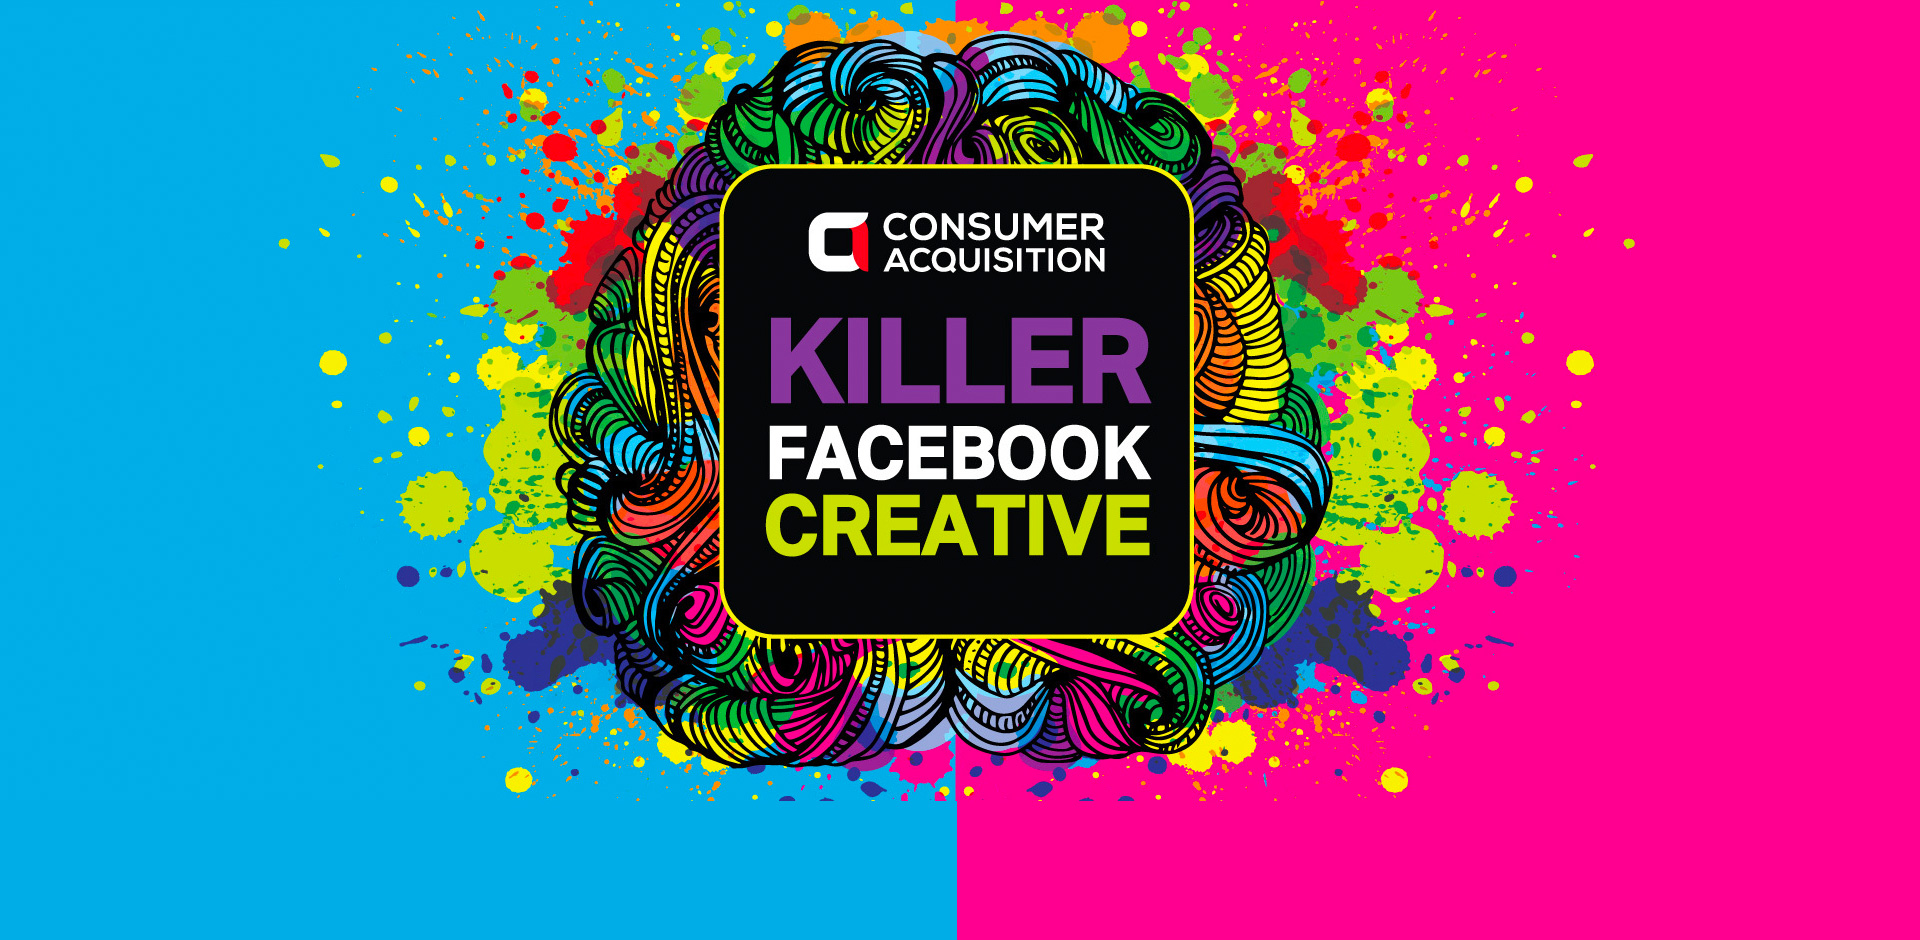 Killer Facebook Creative